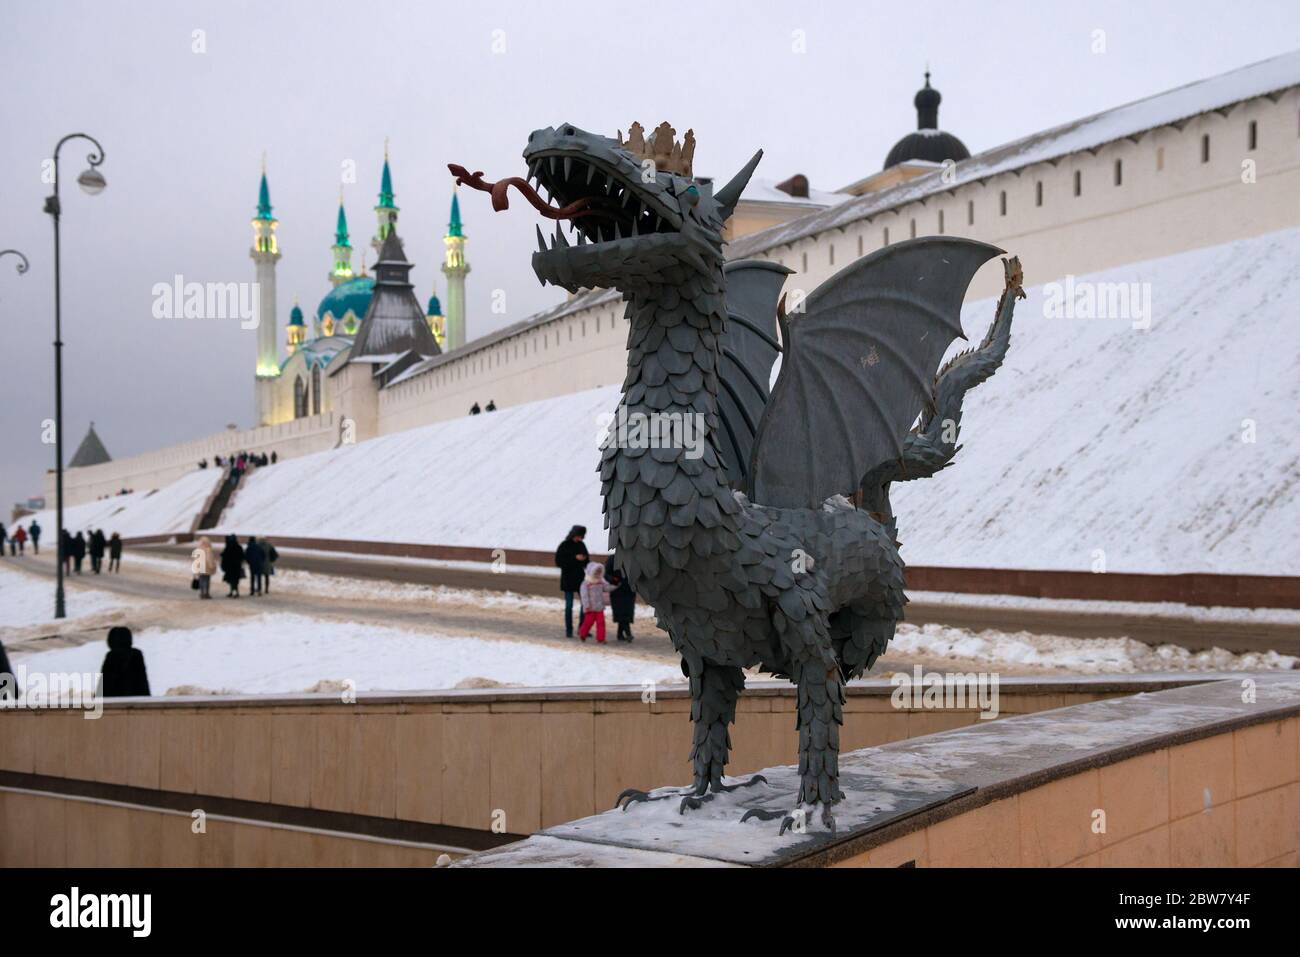 KAZAN, RUSSLAND - 3. JANUAR 2020: dragon Zilant ist das Symbol von Kazan in der Nähe der Kul Sharif Moschee und des Kasan Kreml an einem Winterabend Stockfoto